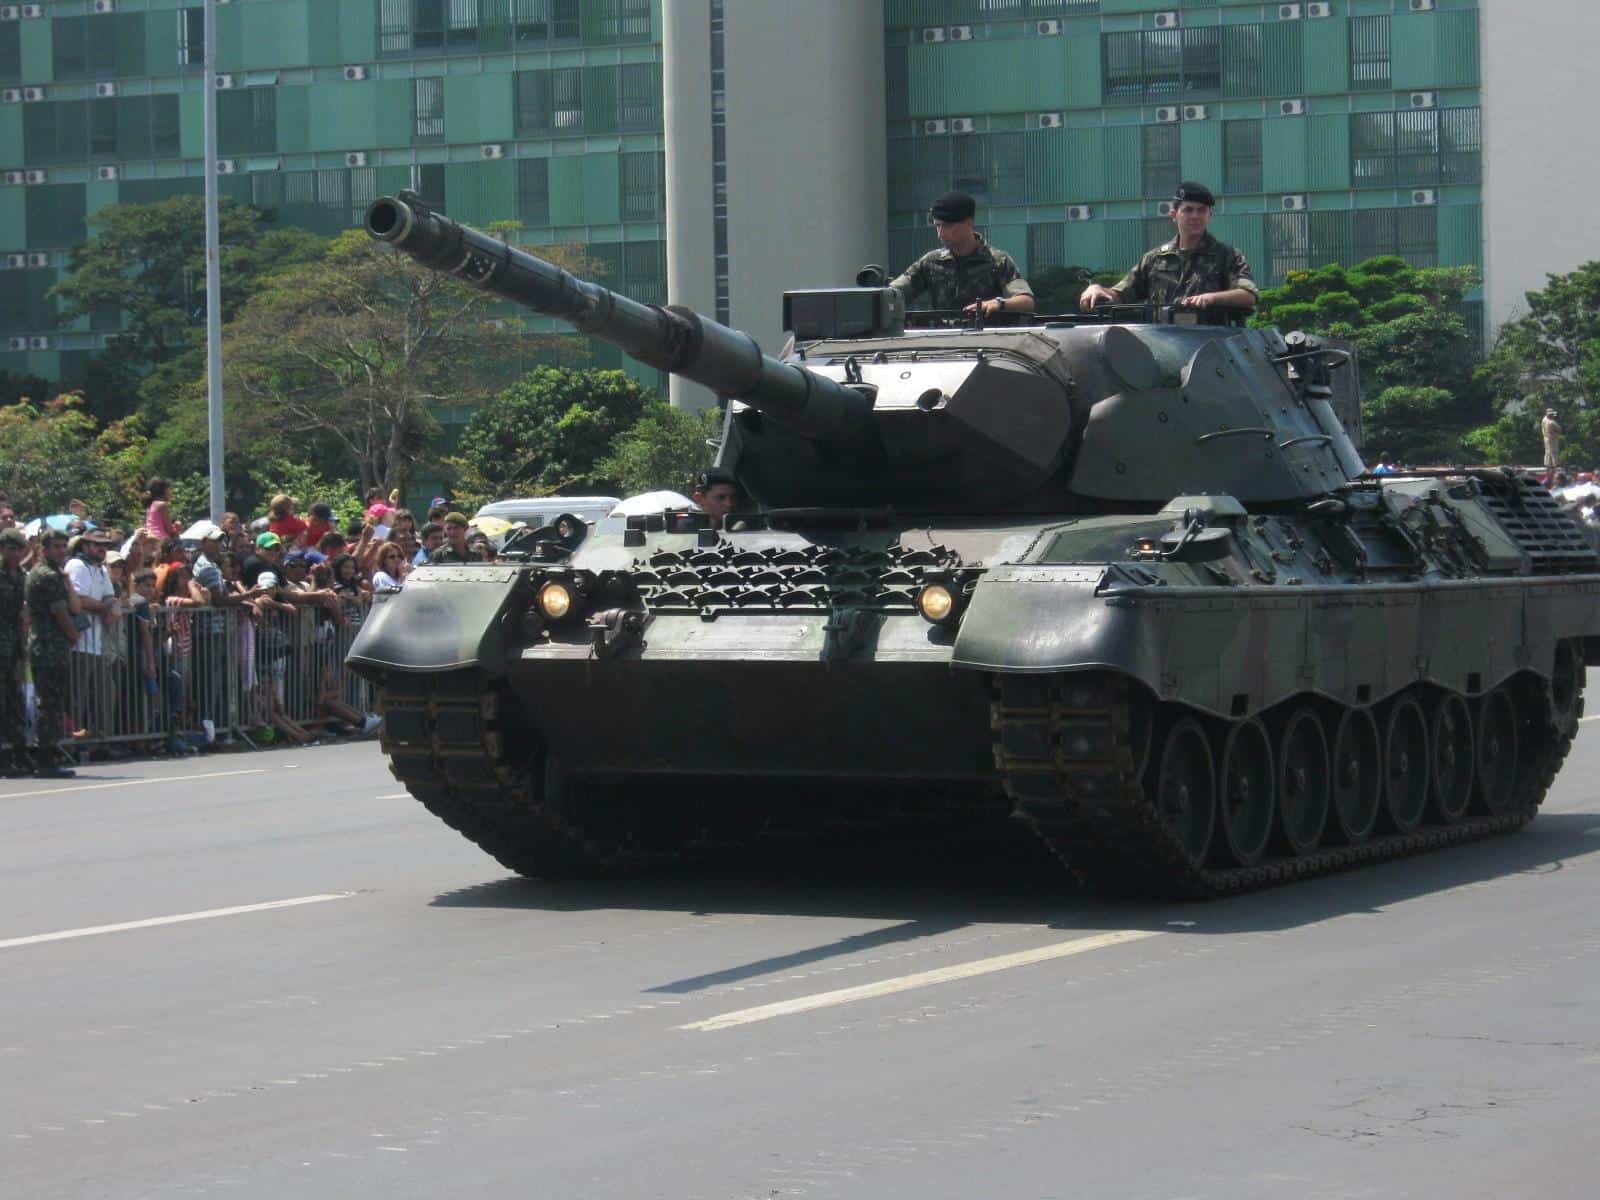 Leopard+1 | Brazilian Leopard 1 tank